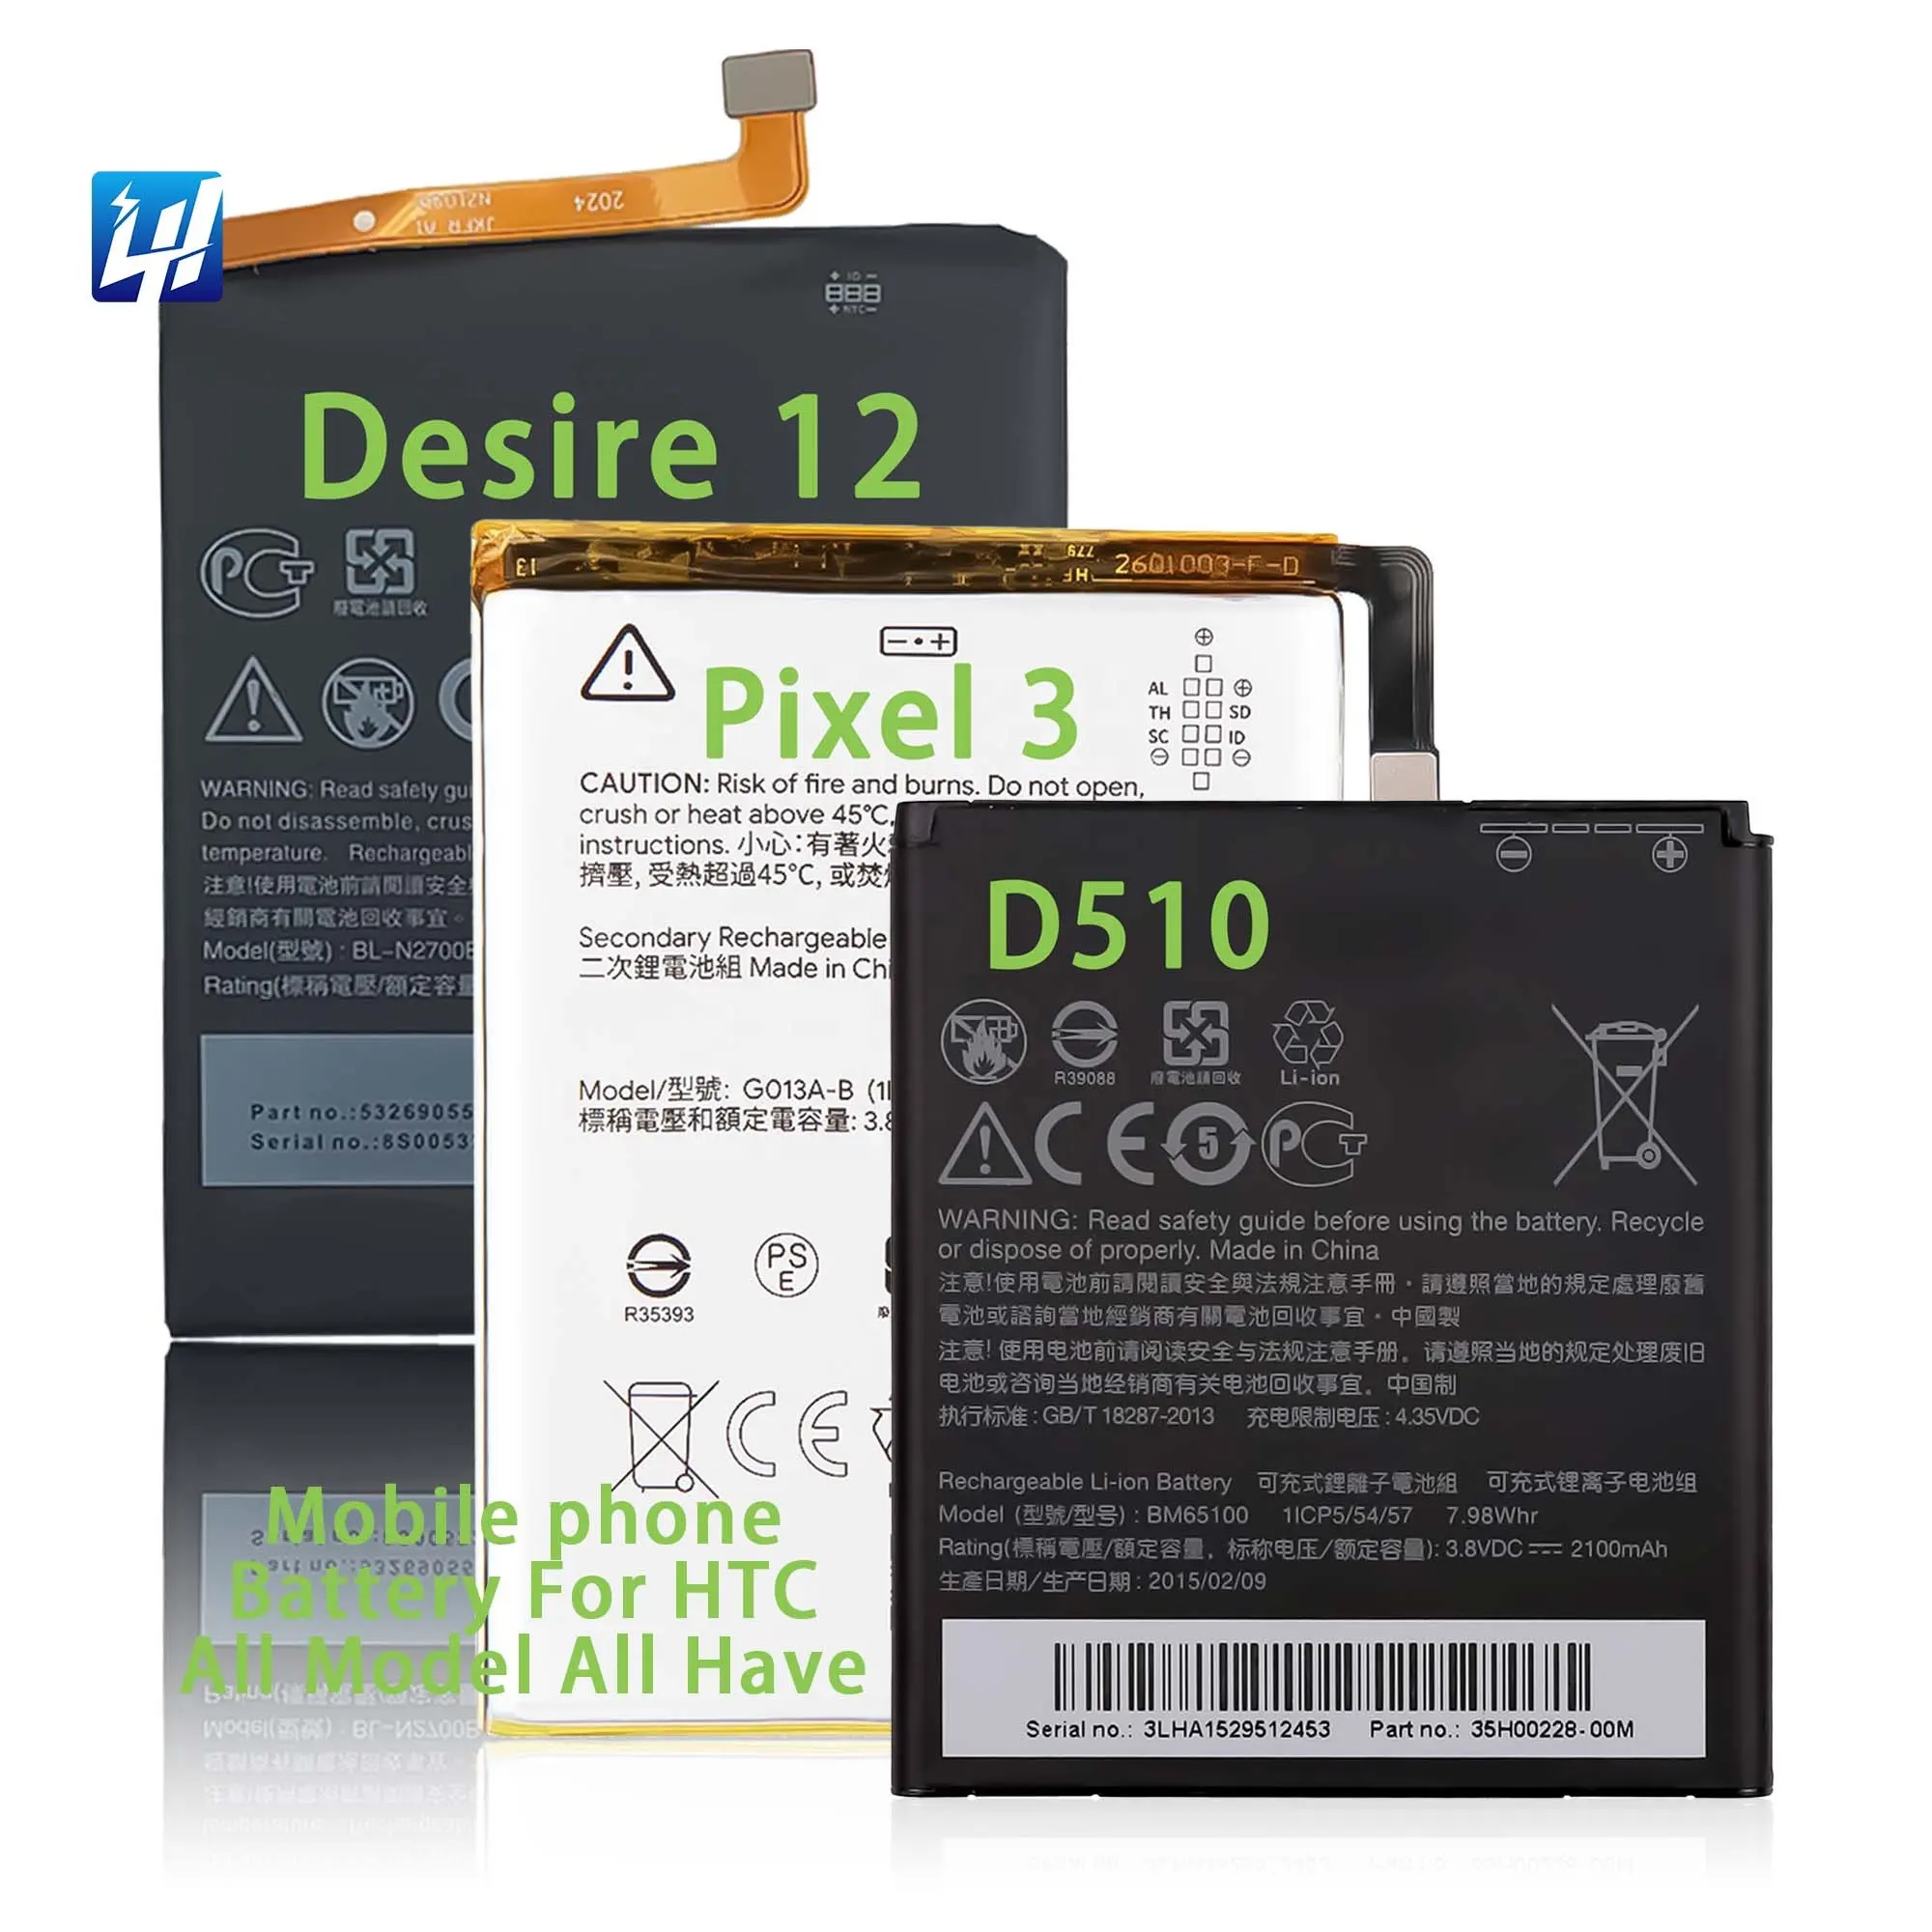 OEM Factory Shop D816 D810 Pixel 2 XL Full range of phone battery for HTC M7 M8 M9 D10 D12 Plus LongHe